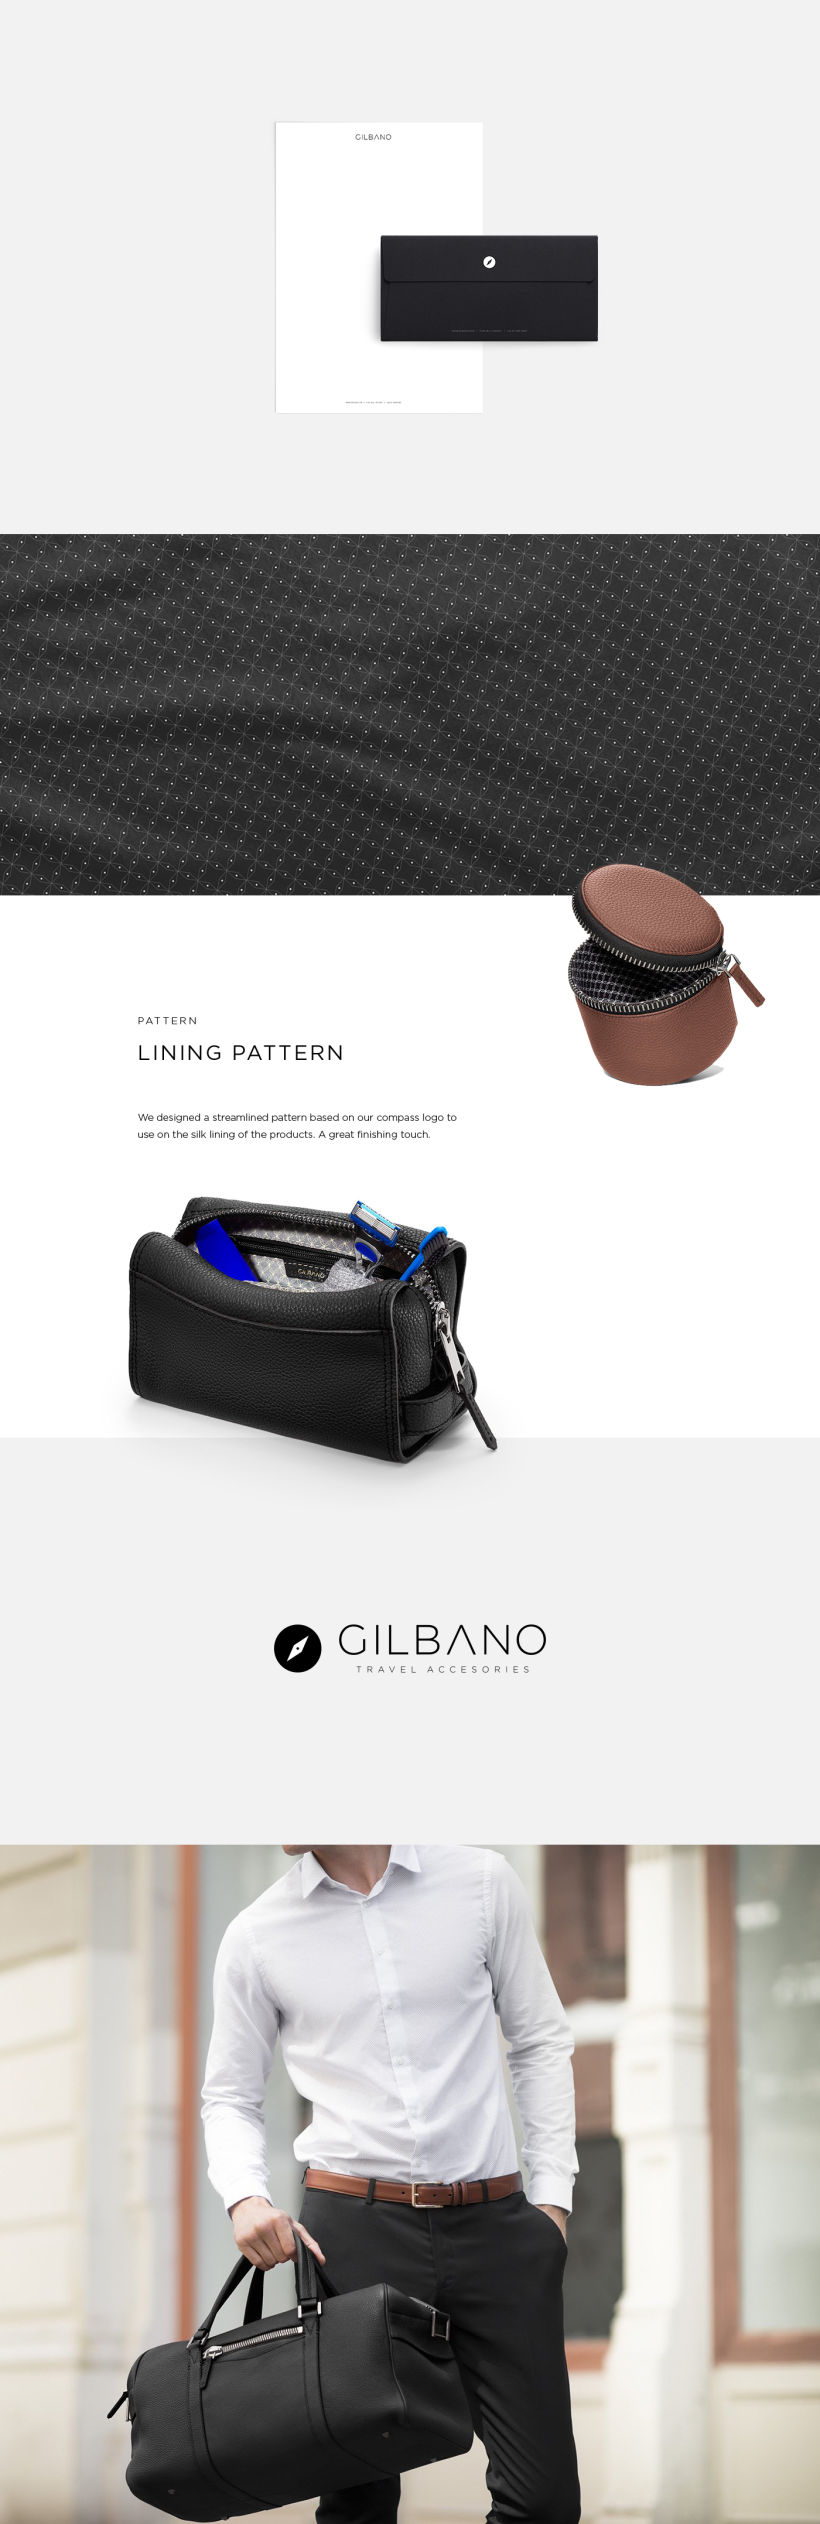 GILBANO - Fashion Branding 3